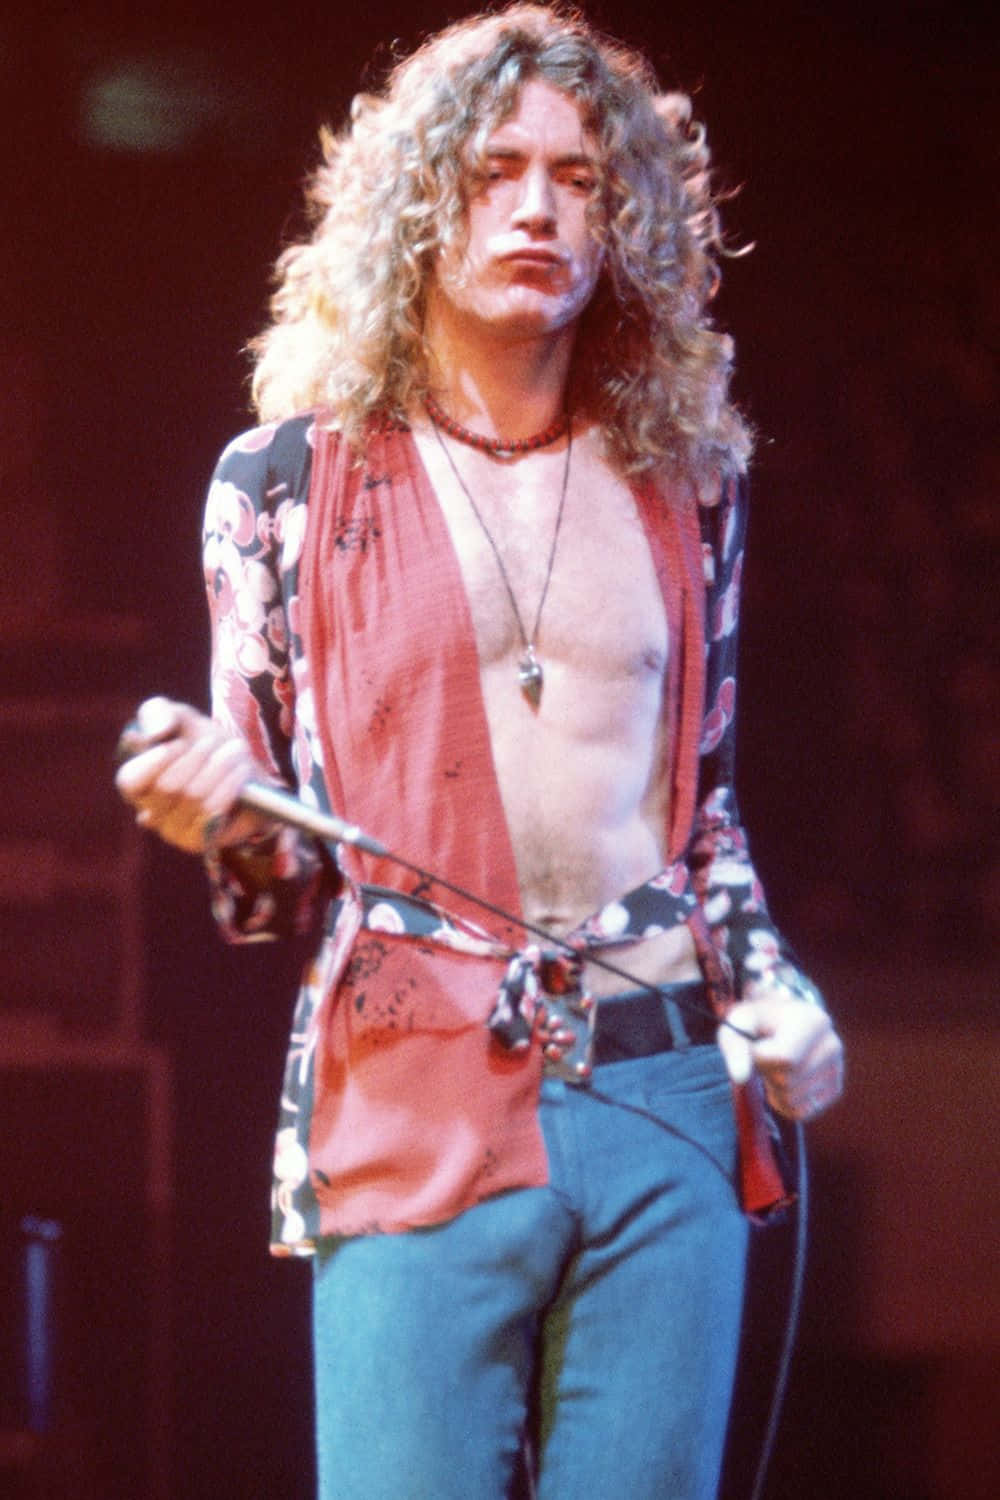 Legendariskemusikern Robert Plant